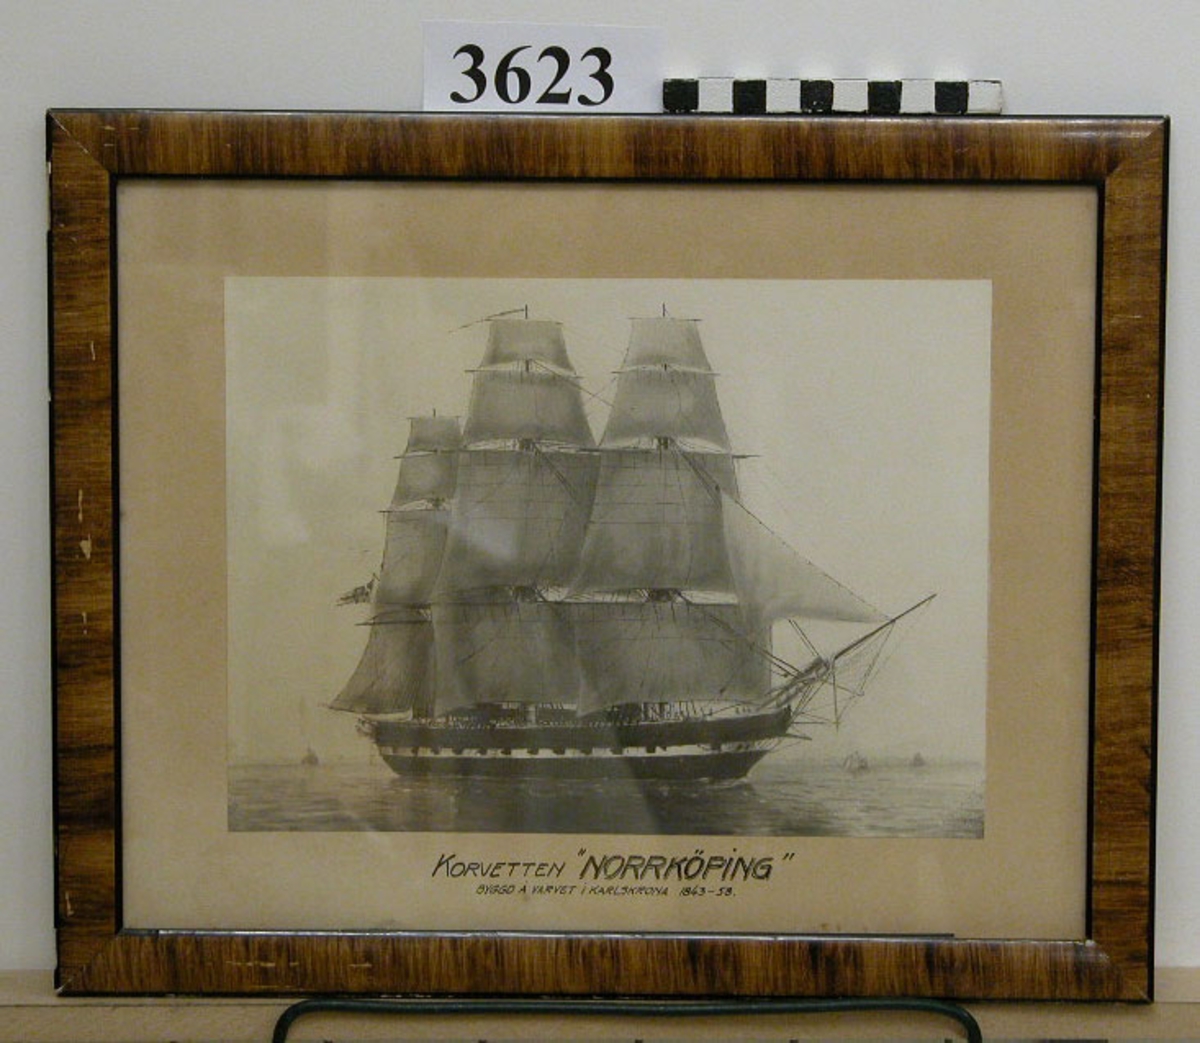 Fotografi, i glas och ram, av korvetten "Norrköping" till segels. Fartyget byggt på varvet i Karlskrona år 1848-58. Upphandlad år 1929 av Artilleridepartementet